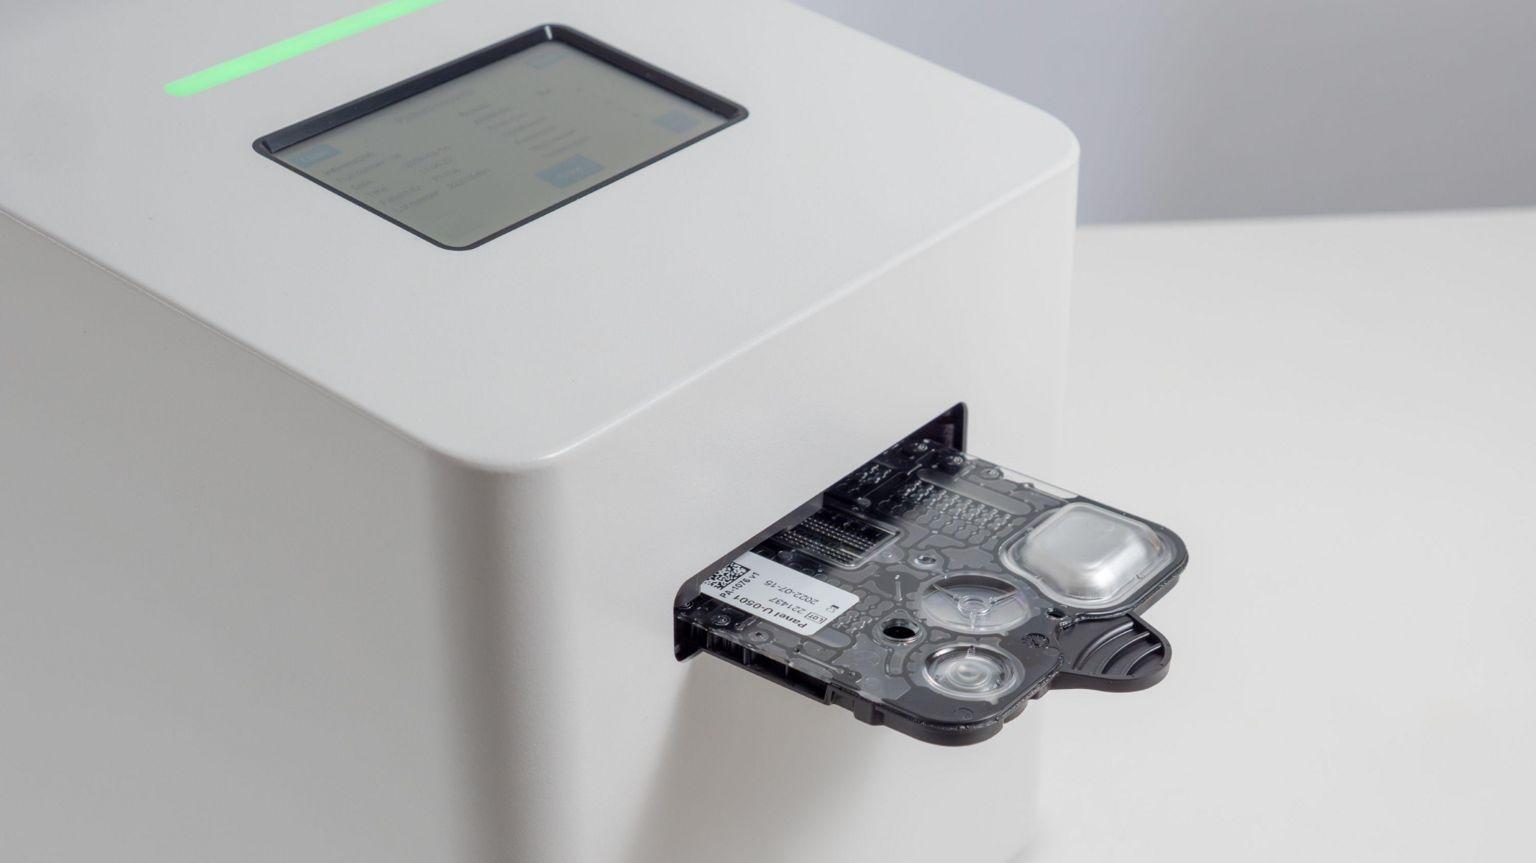 El analizador PA-100, que ganó el Premio Longitude, puede indicar a los médicos si una infección urinaria es causada por bacterias y cuál es el antibiótico adecuado a utilizar.

Sysmex Astrego